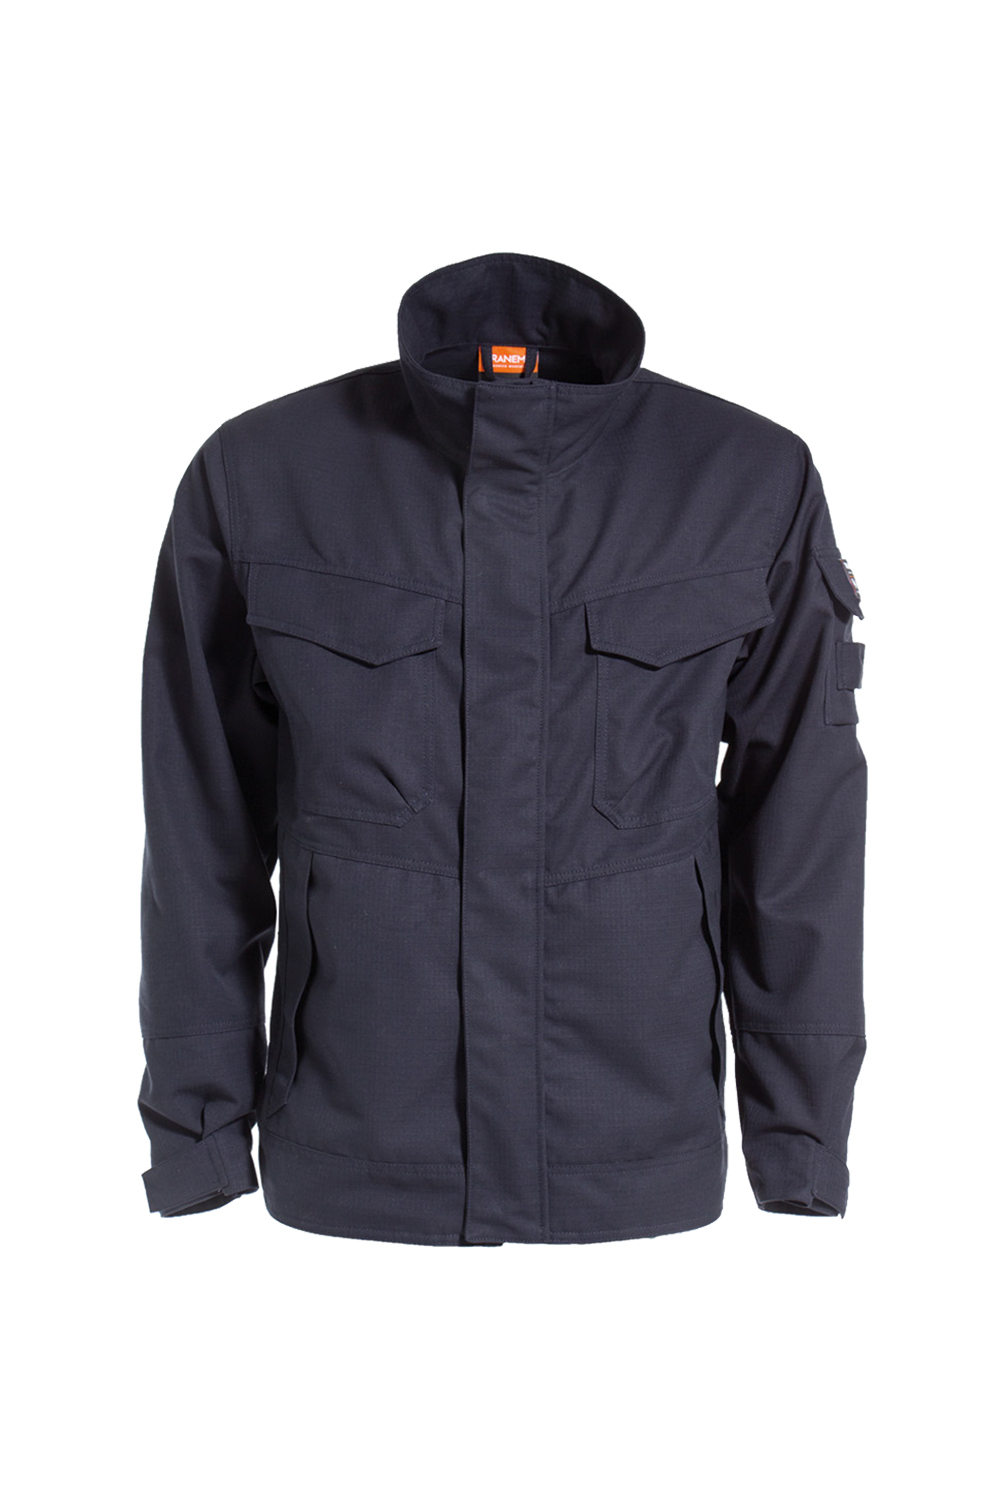 Tera TX Non-metal FR Jacket 6035 81 / Tranemo / Workwear